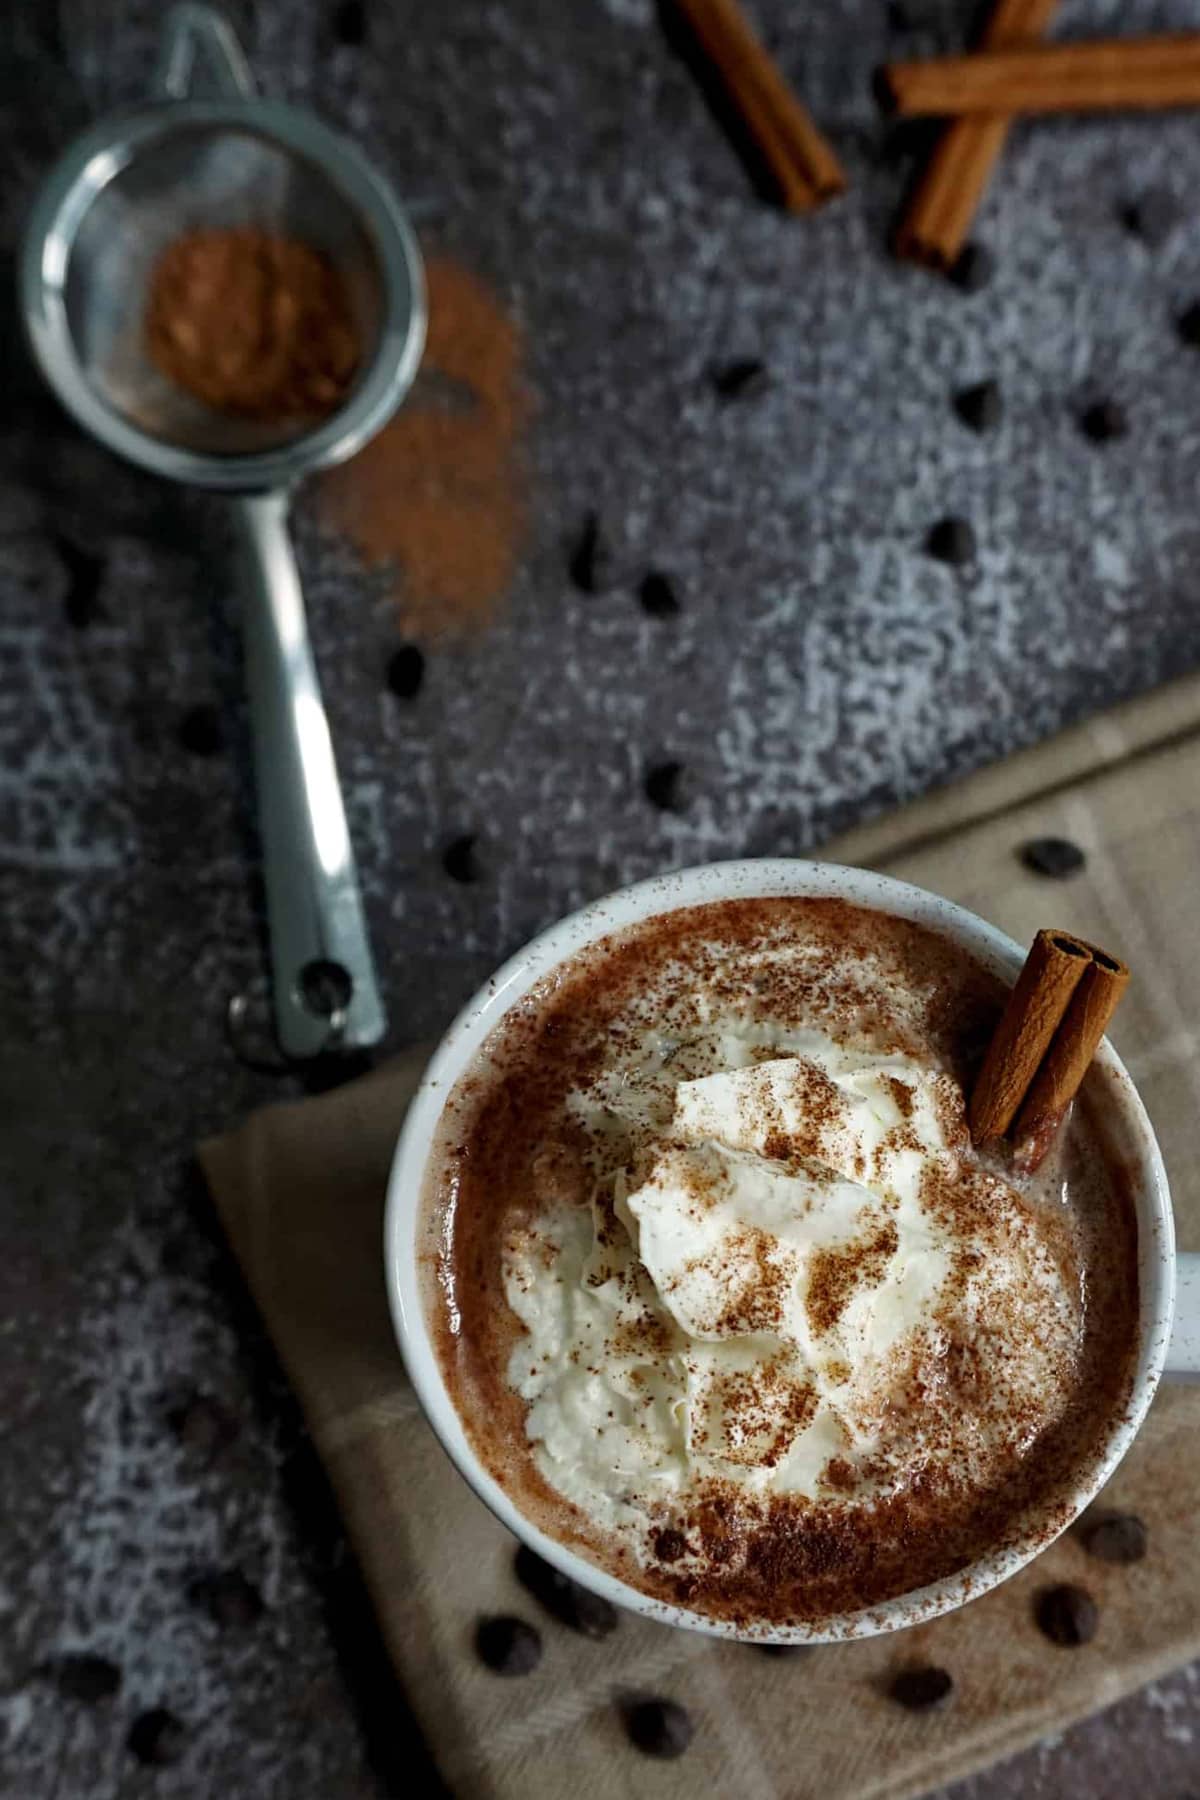 Keto hot chocolate in a holiday mug